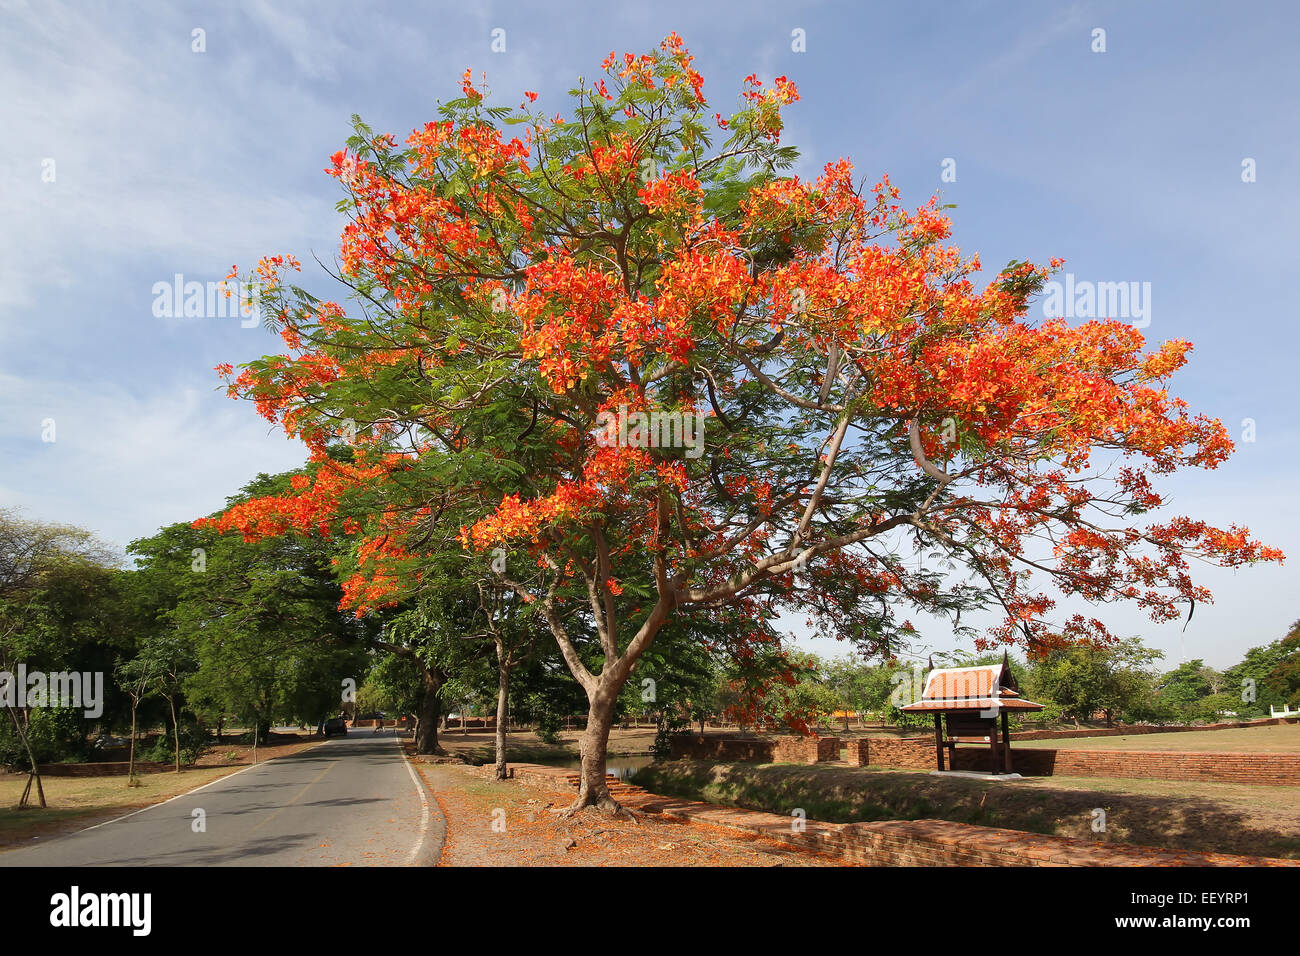 Royal Poinciana arbre au bord de la route Banque D'Images